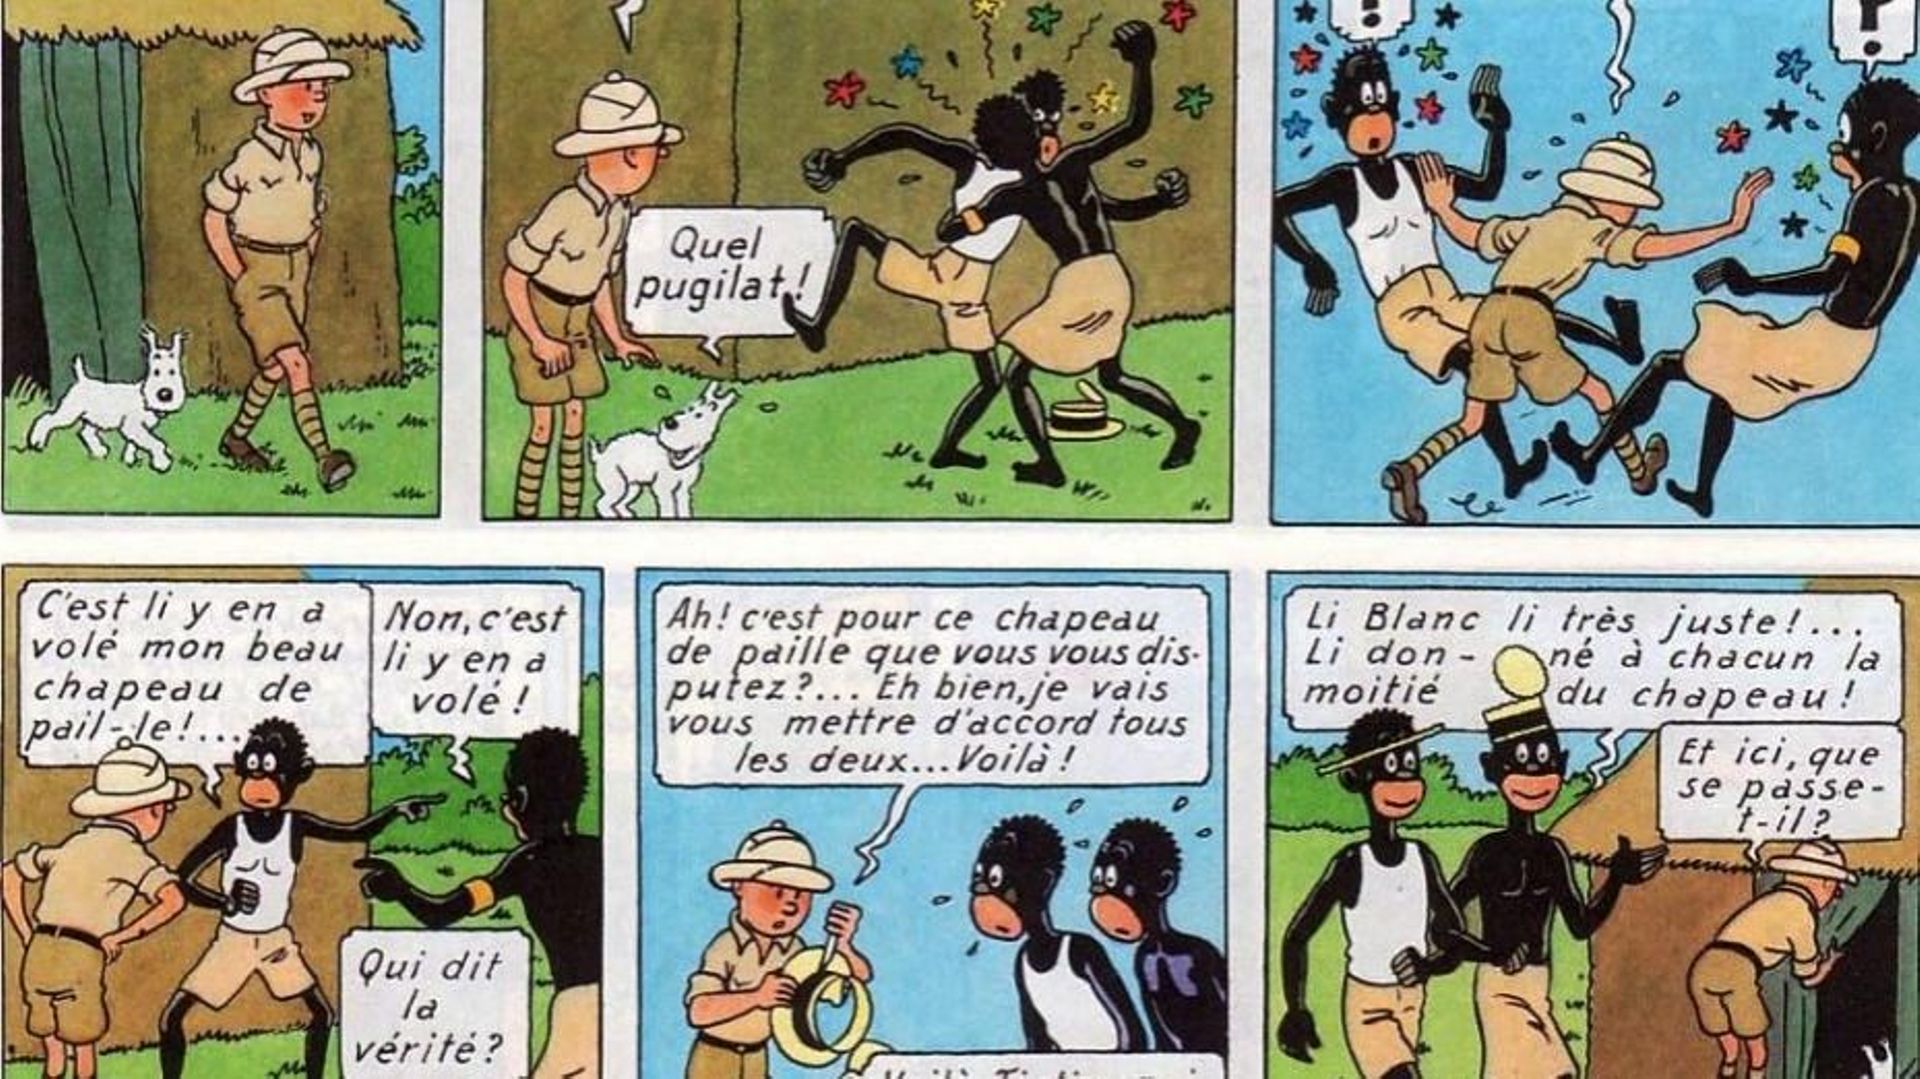 Tintin au Congo recolorisé sort en version numérique pour cause de